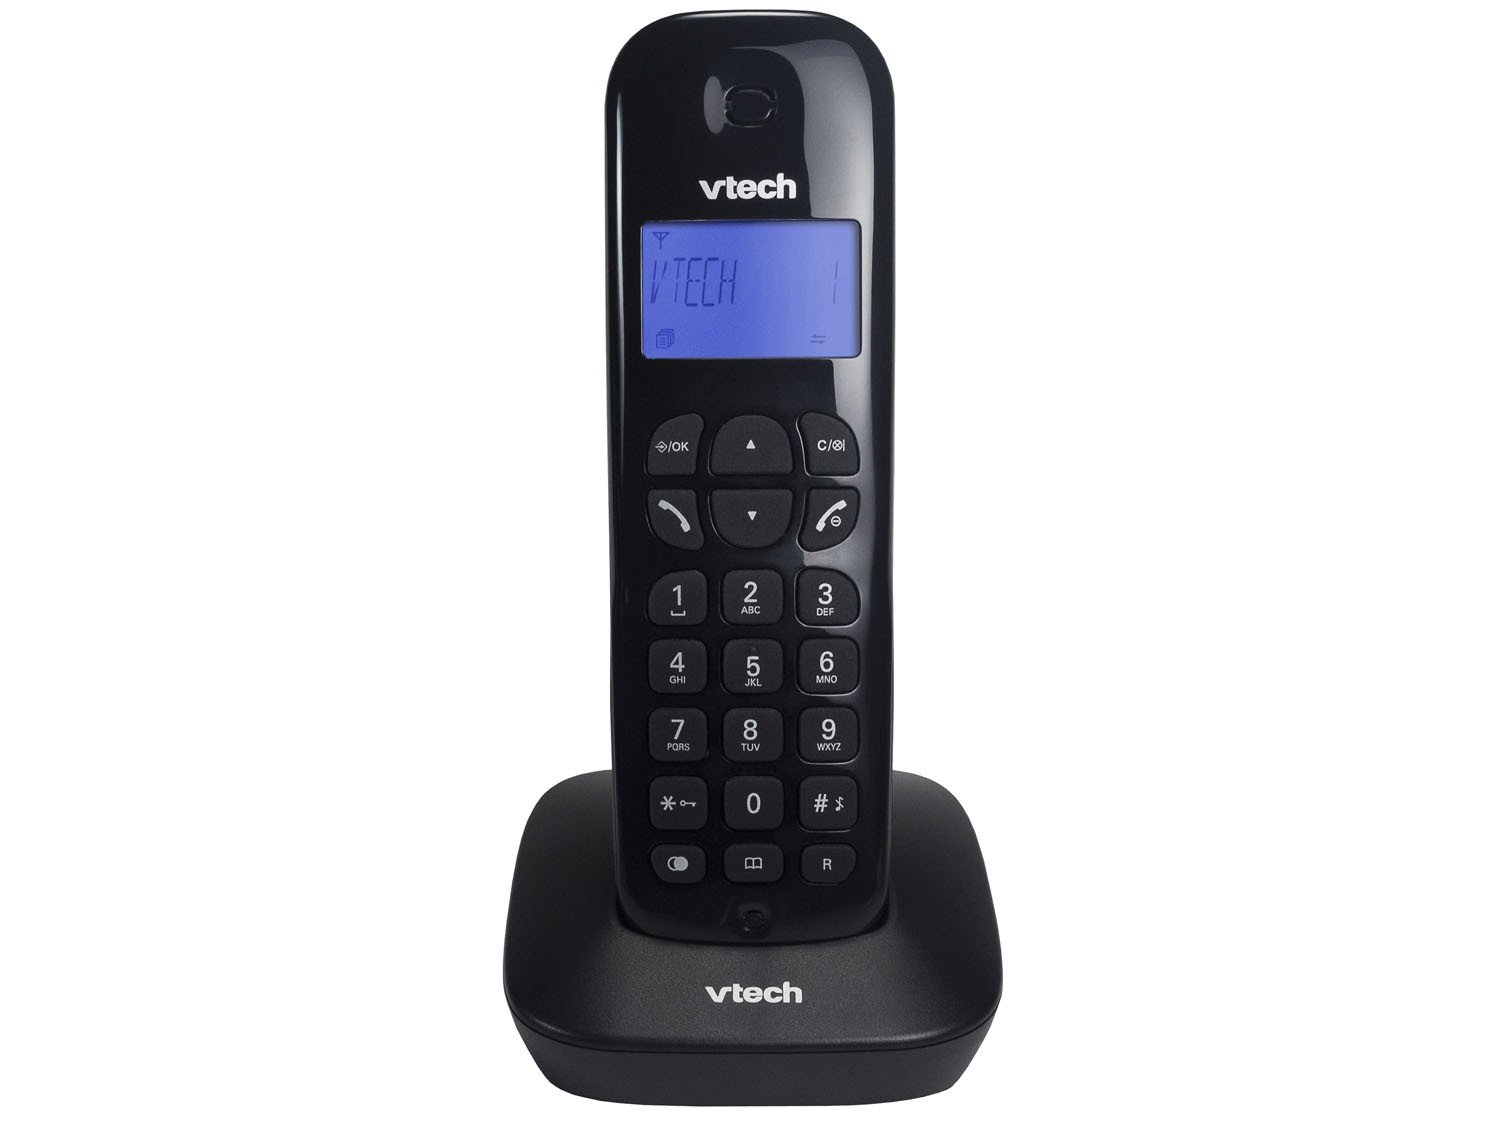 Telefone Digital Sem Fio Vtech VT680 com Identificador de Chamadas e Visor - Preto - 1